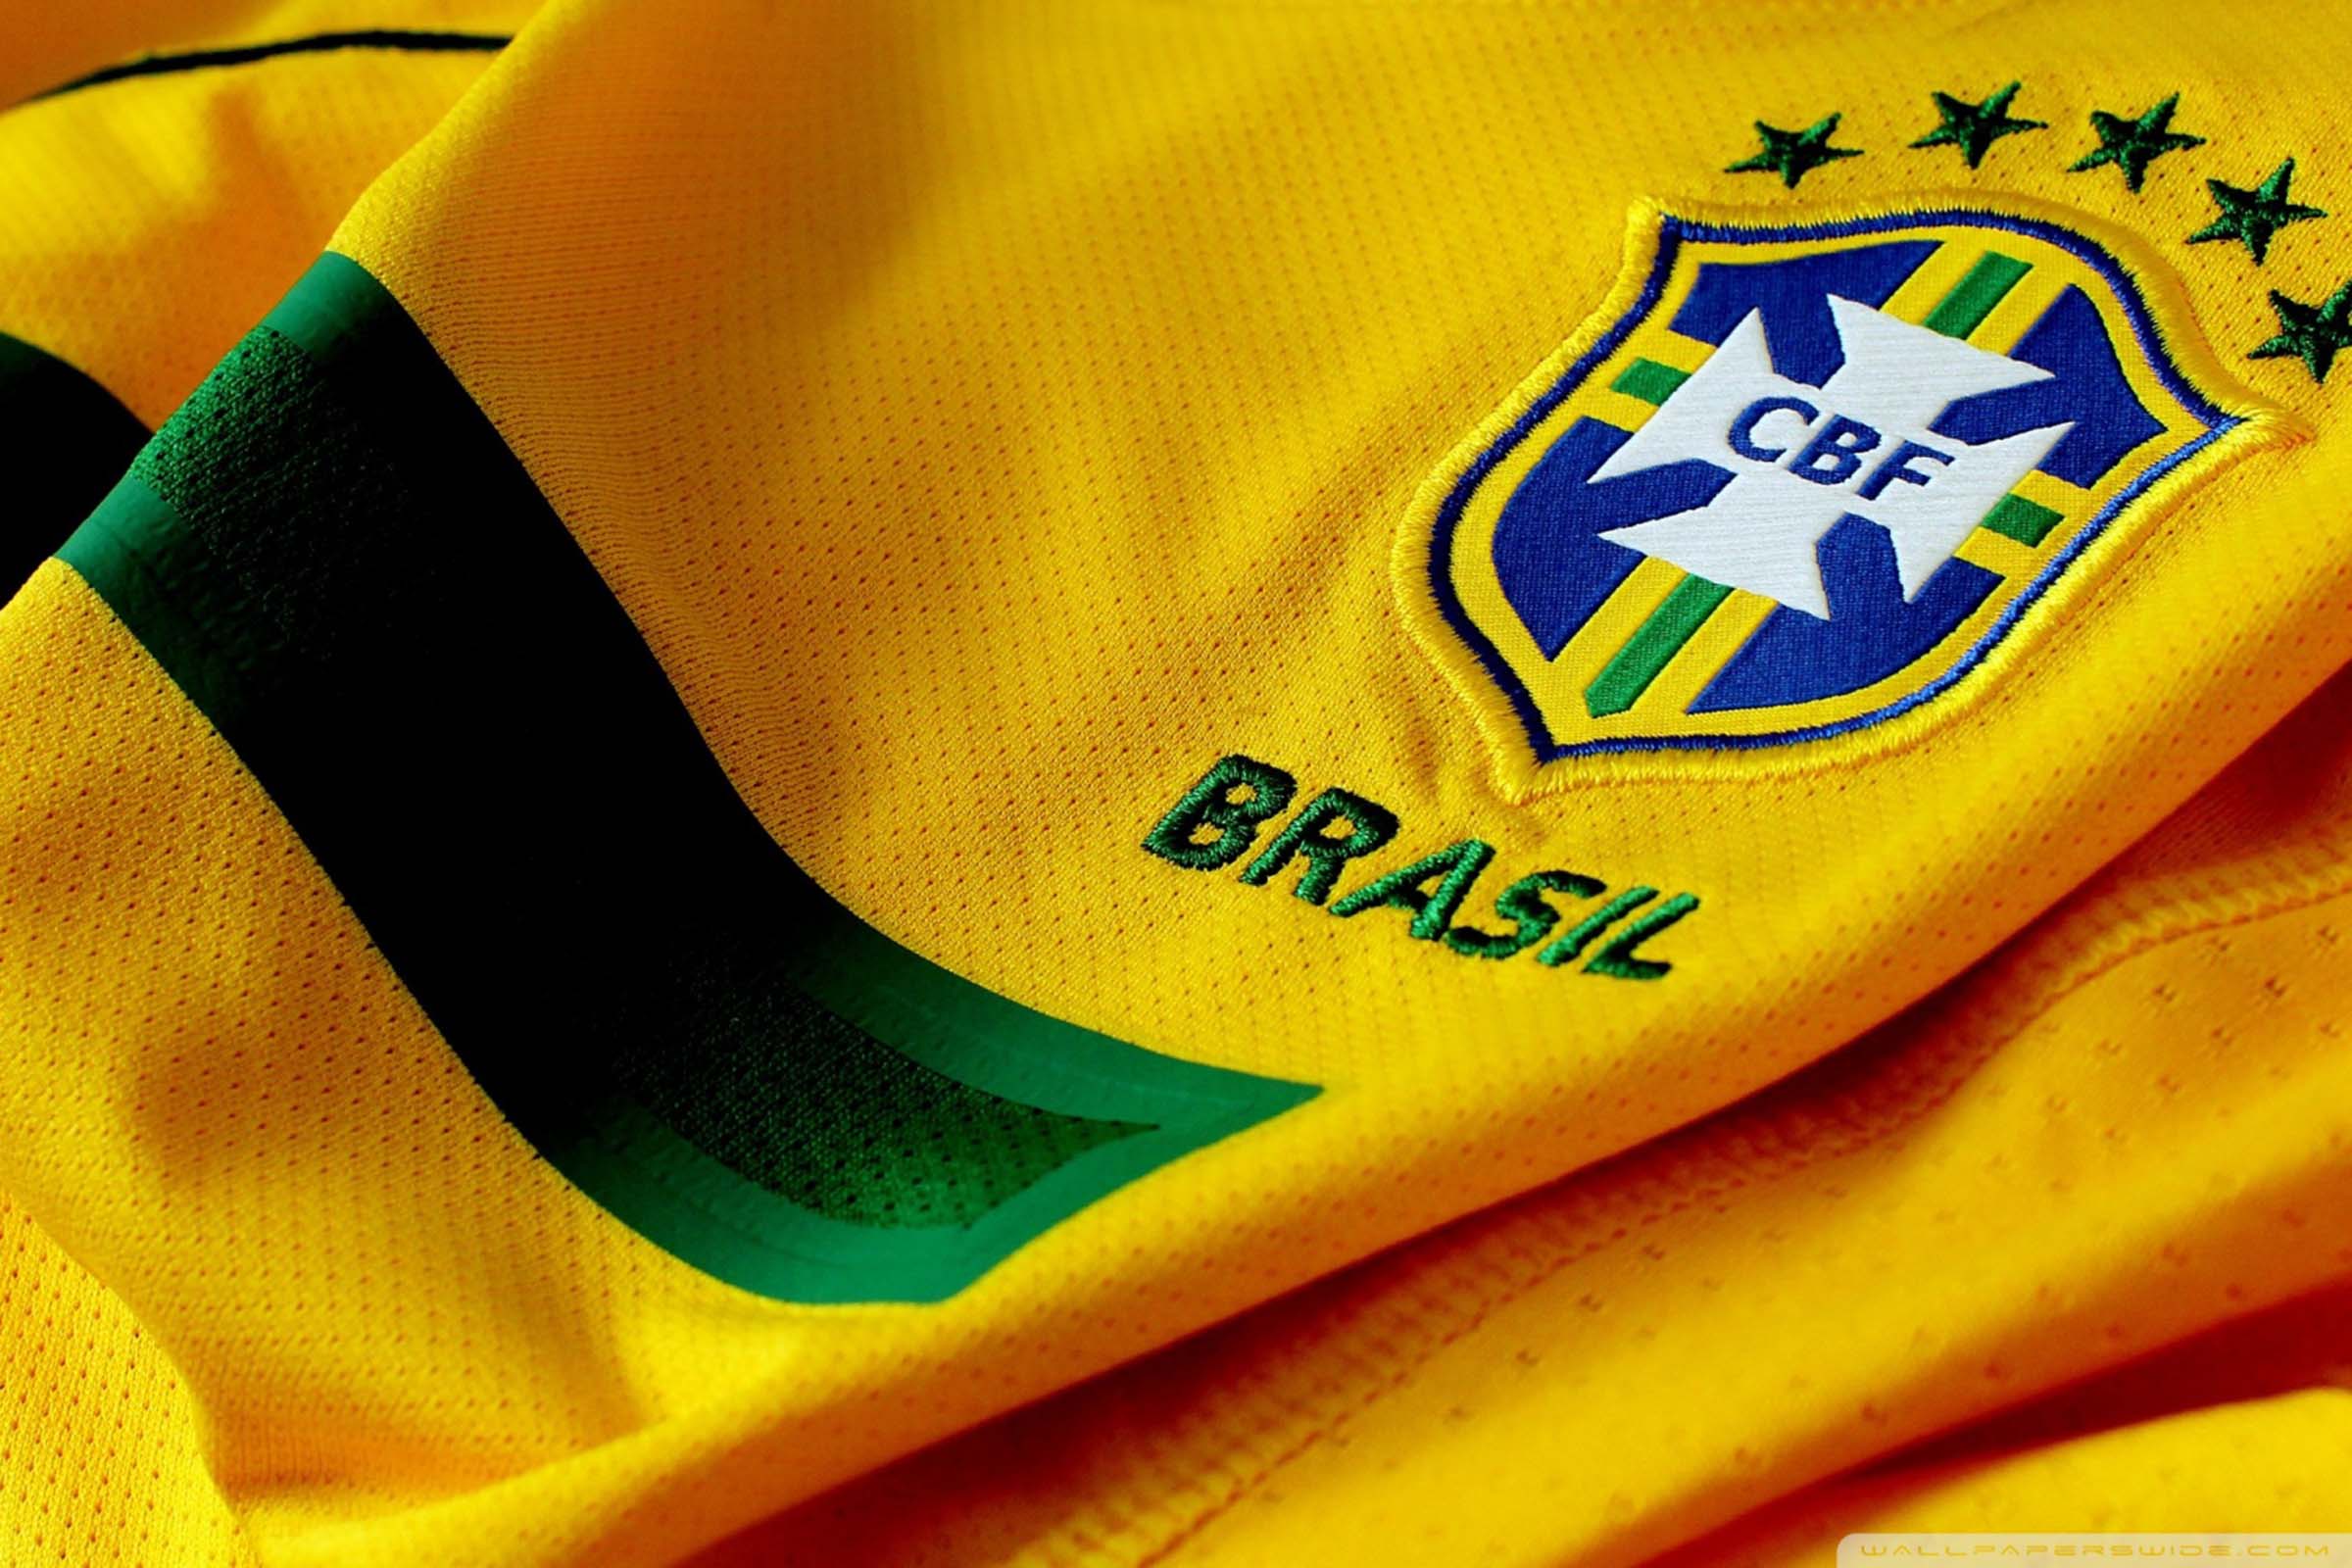 Prefeitura terá horário diferenciado durante os jogos do Brasil na Copa do  Mundo - Notícias - Prefeitura Municipal de Primavera do Leste